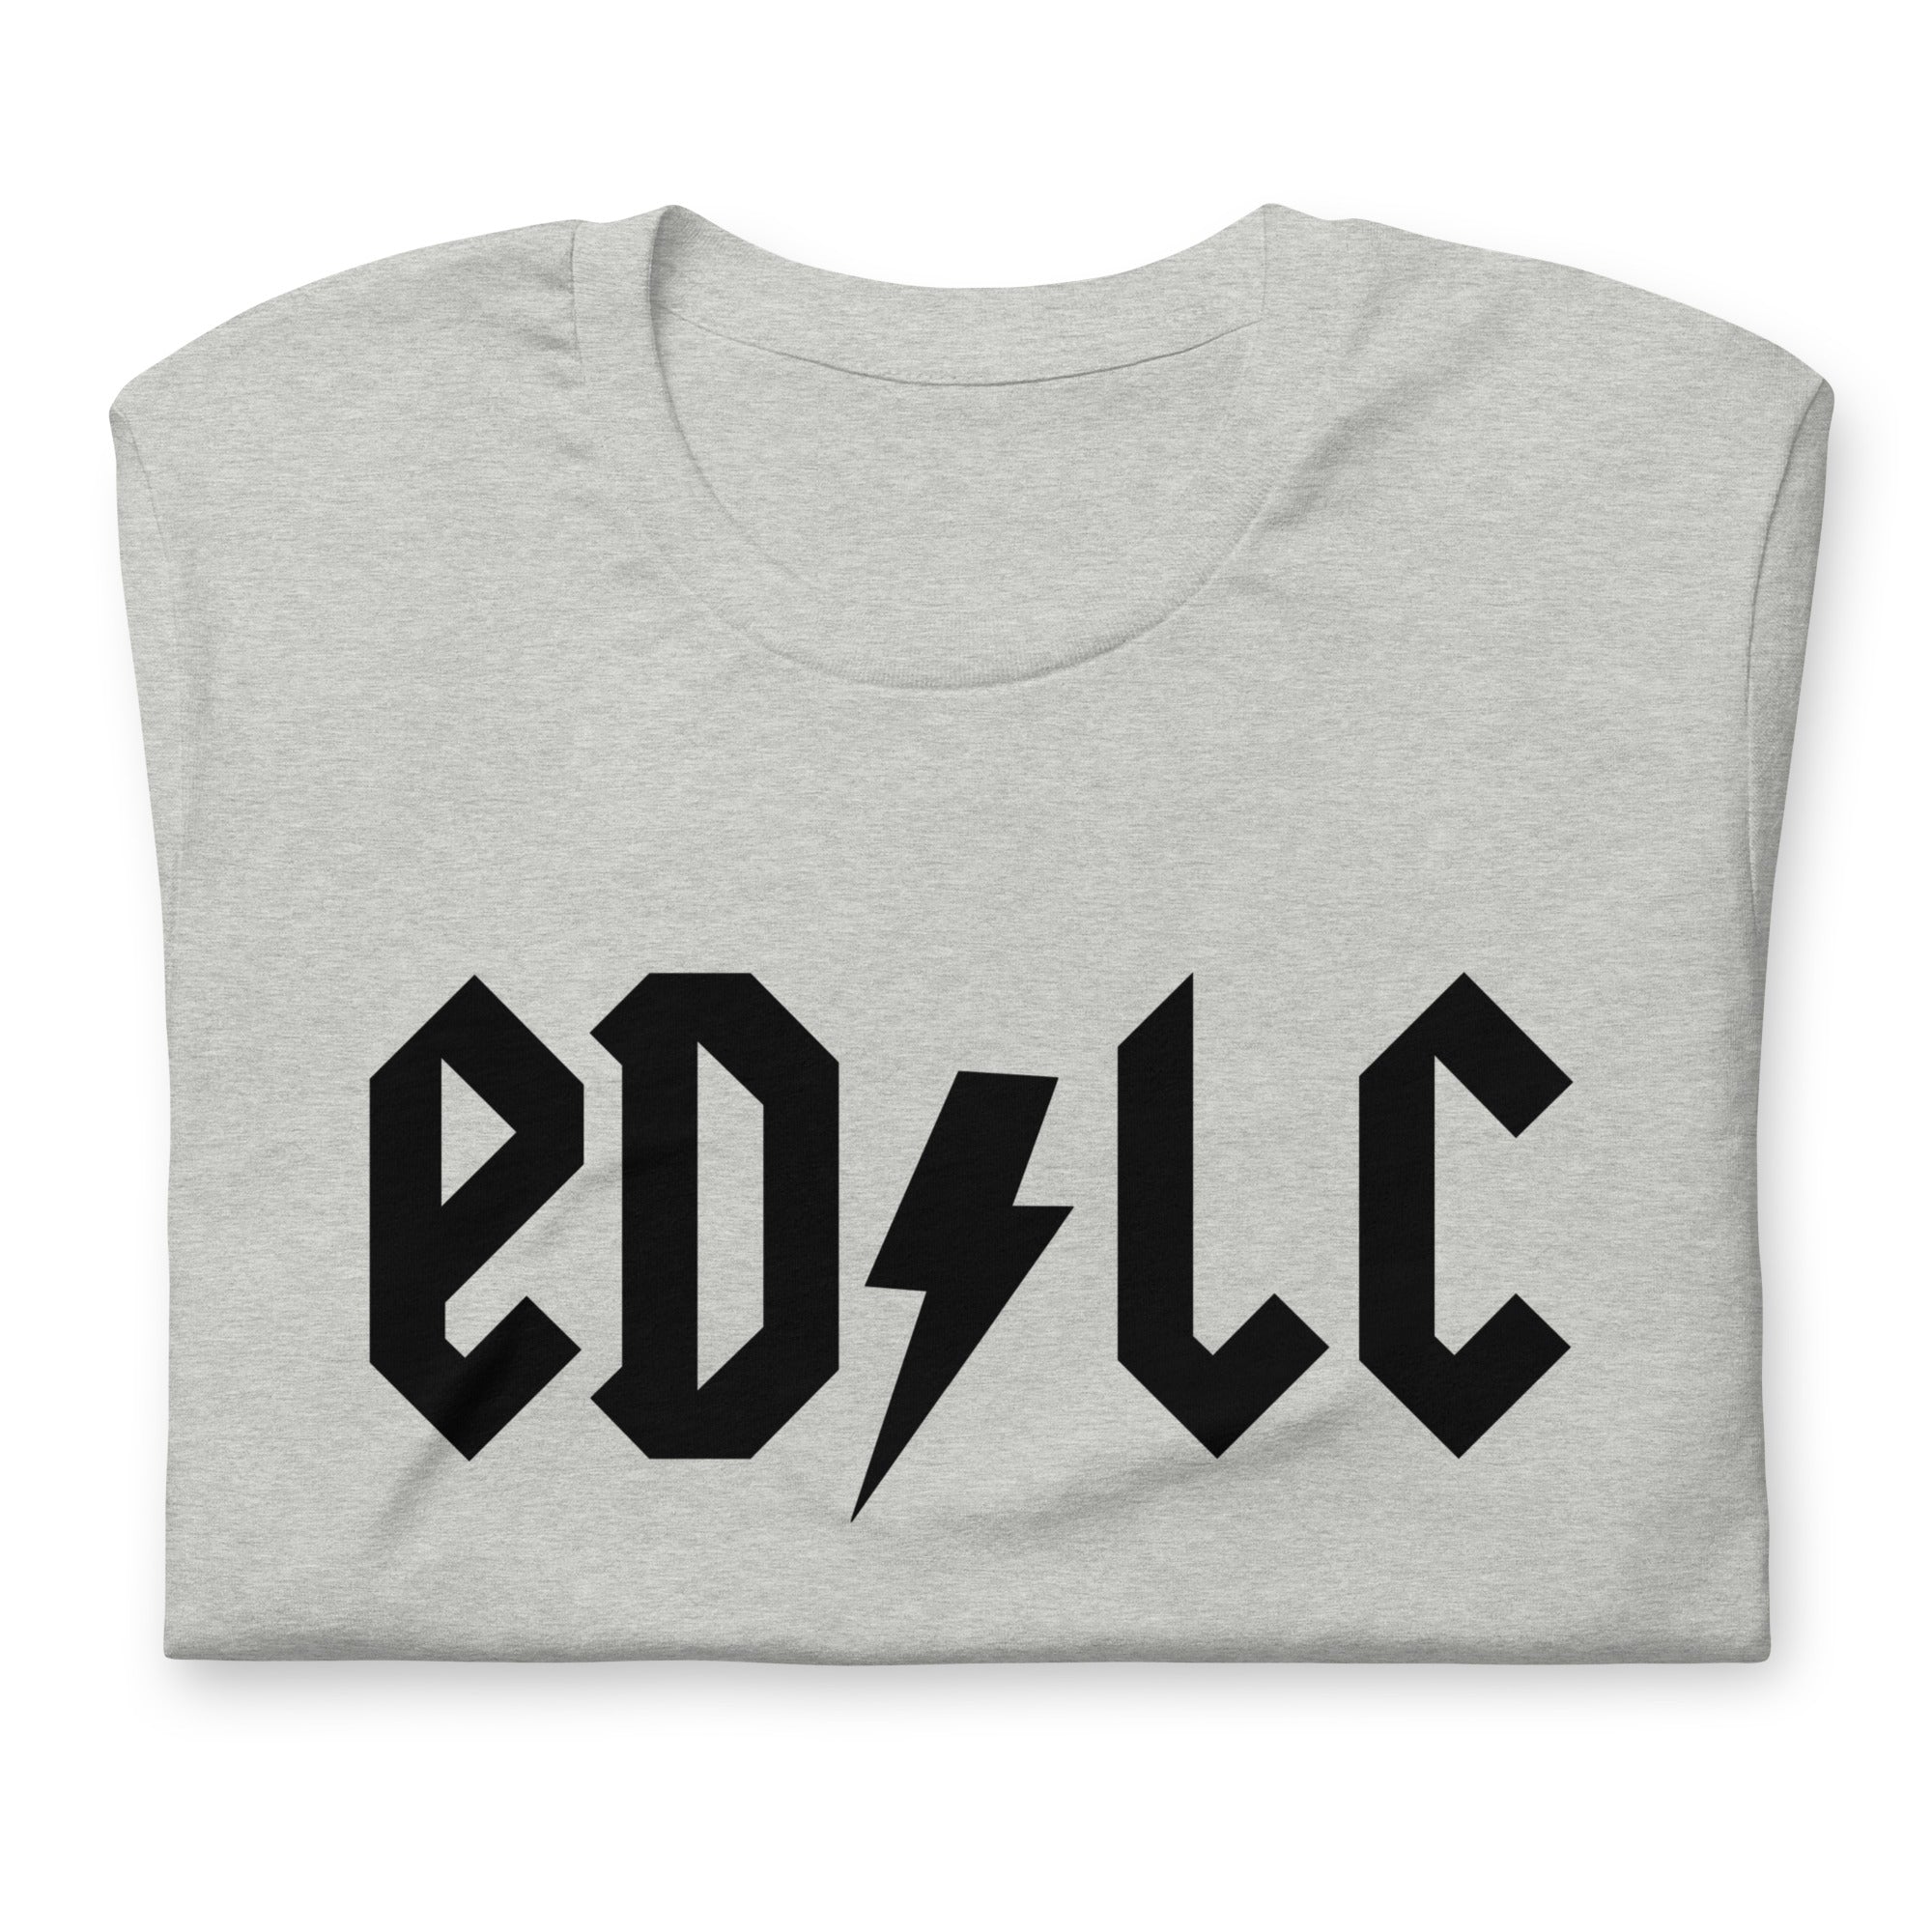 ELDC: Electric